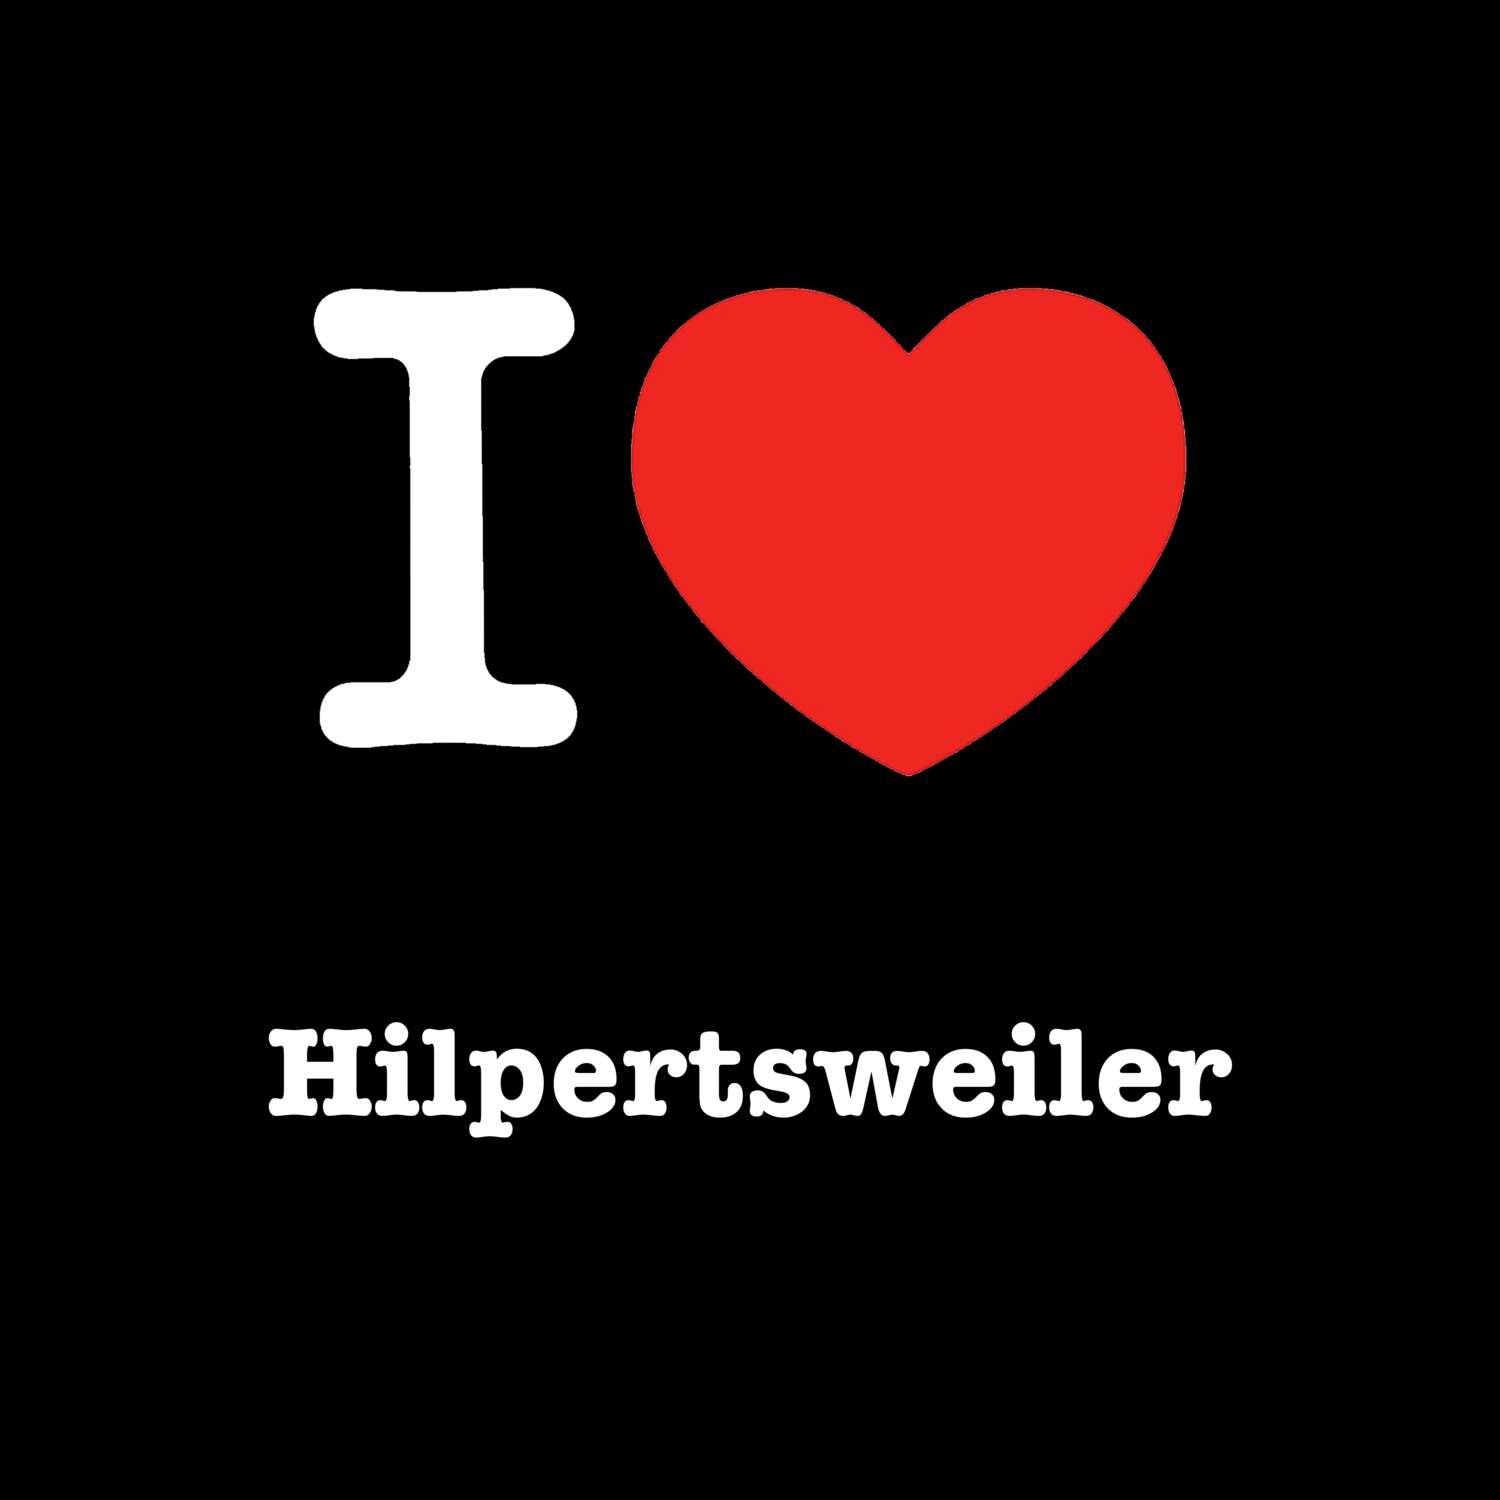 Hilpertsweiler T-Shirt »I love«